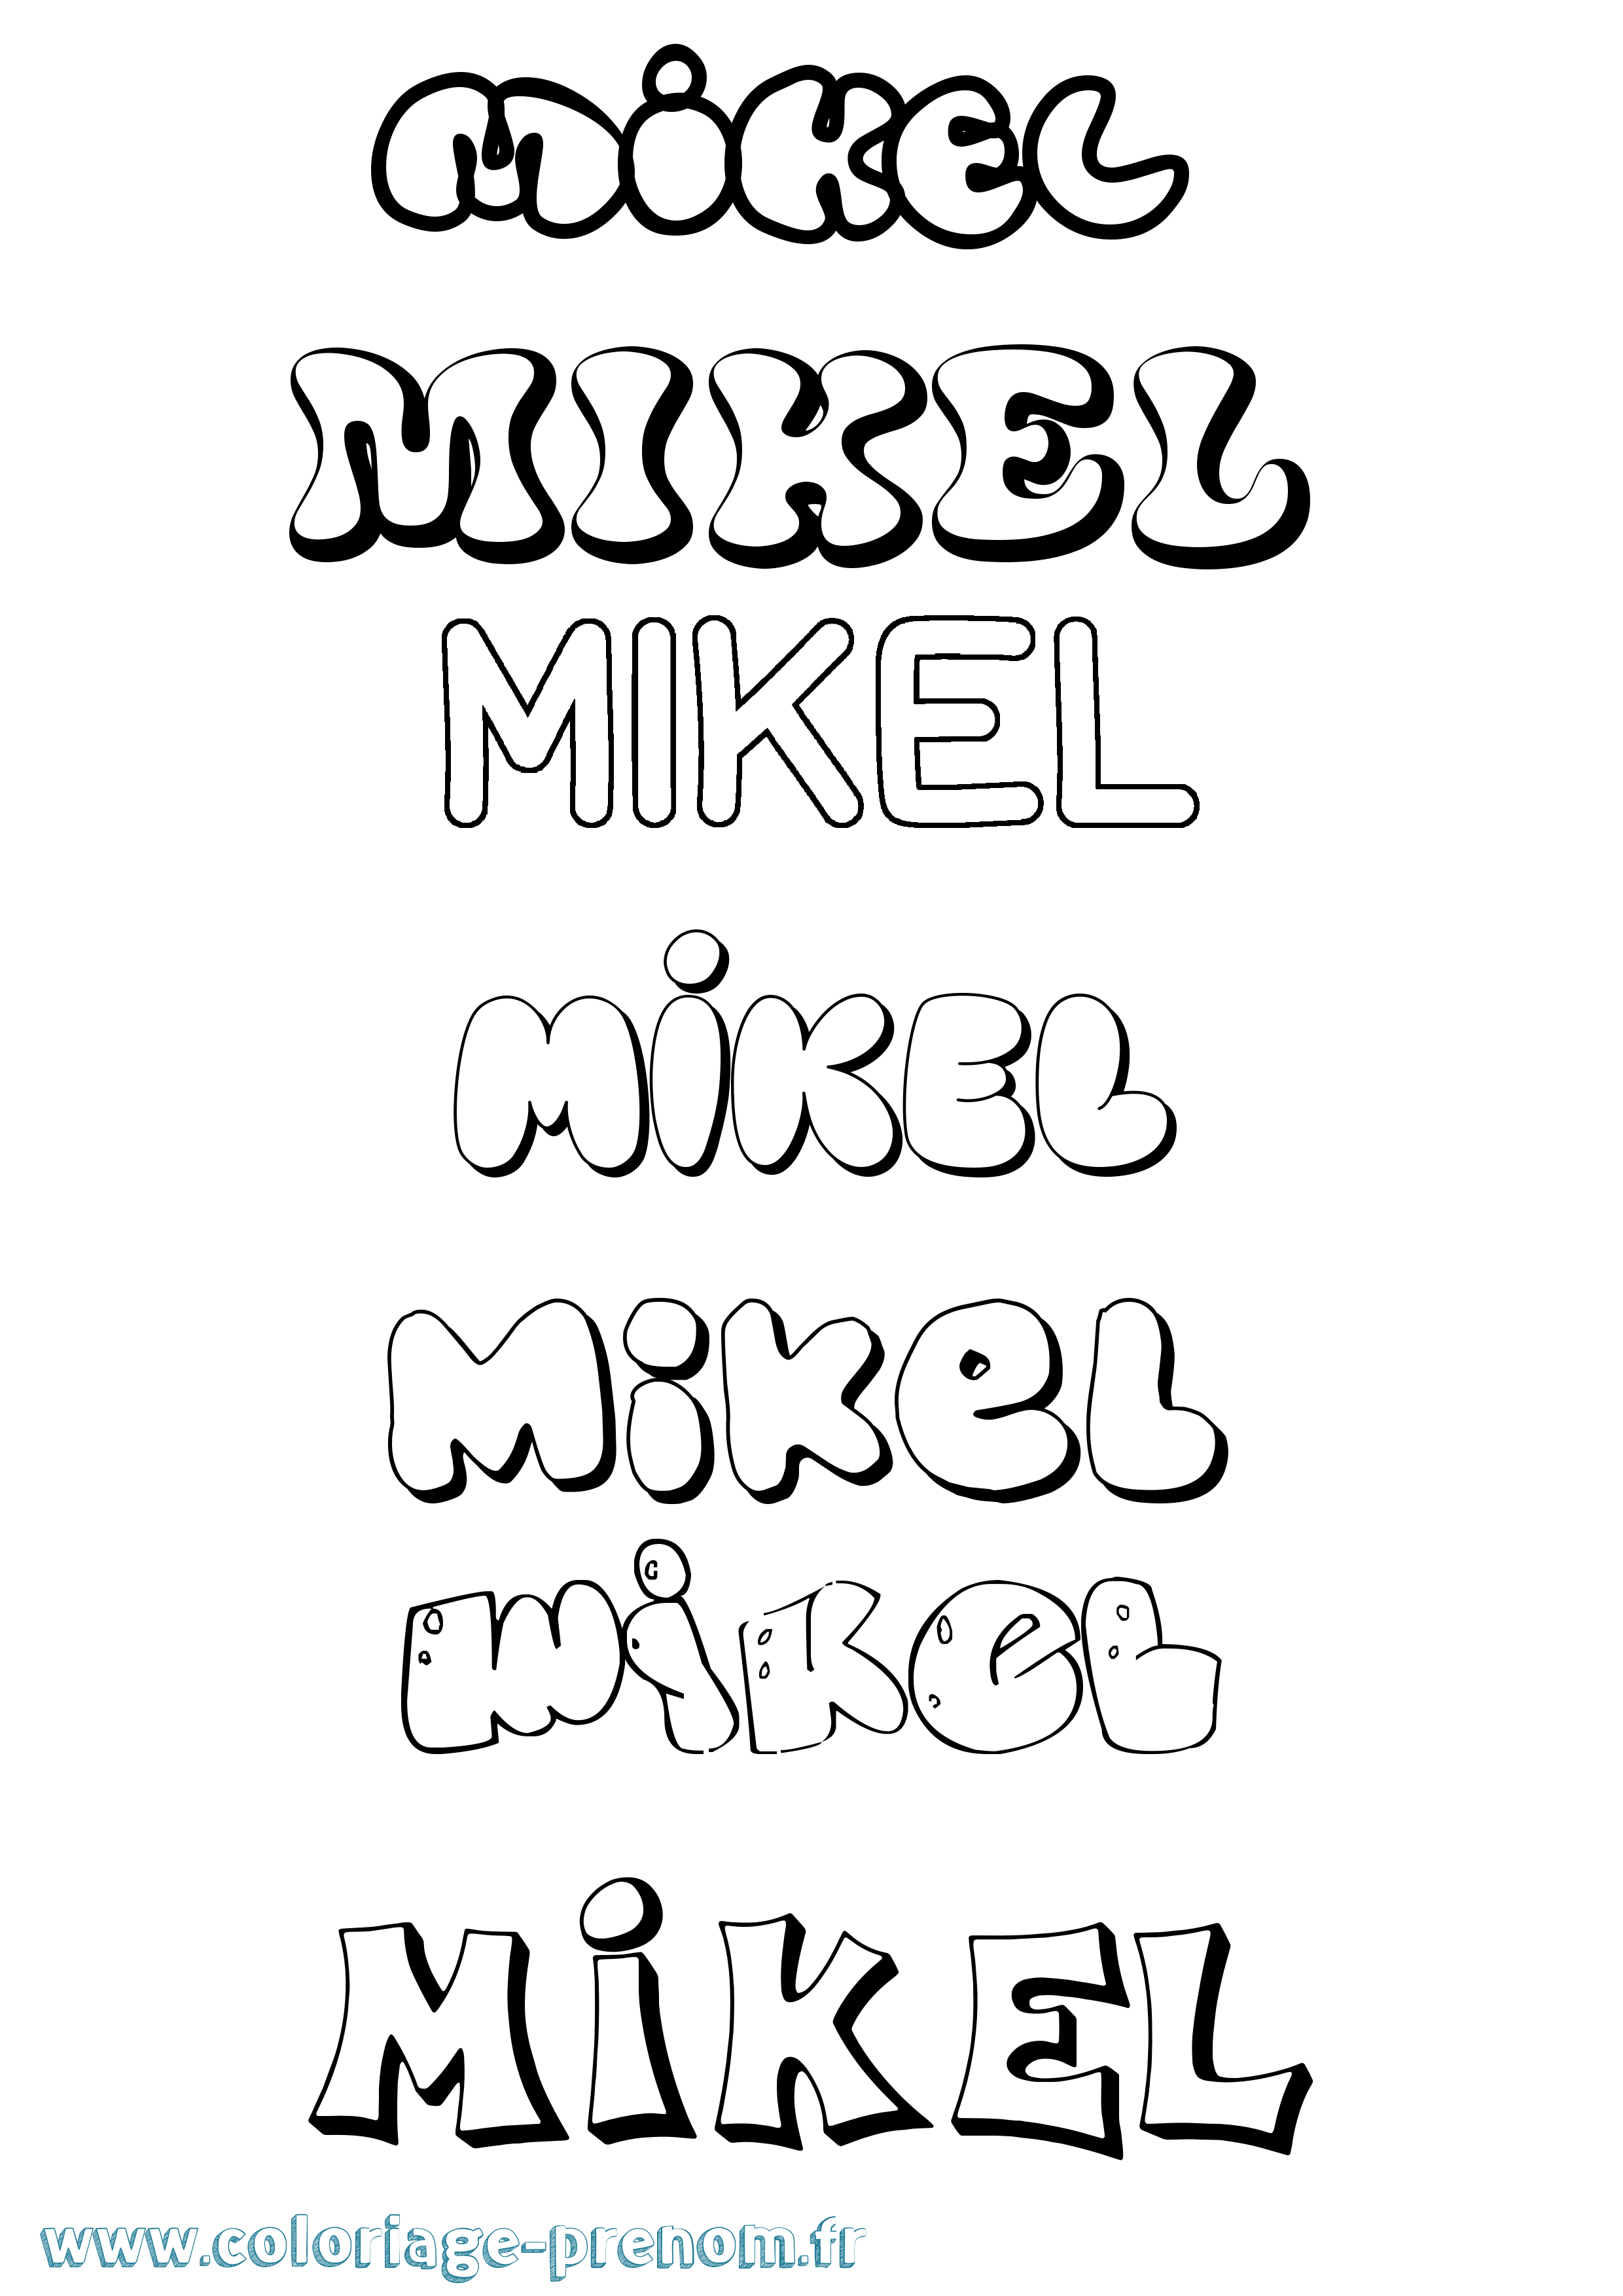 Coloriage prénom Mikel Bubble